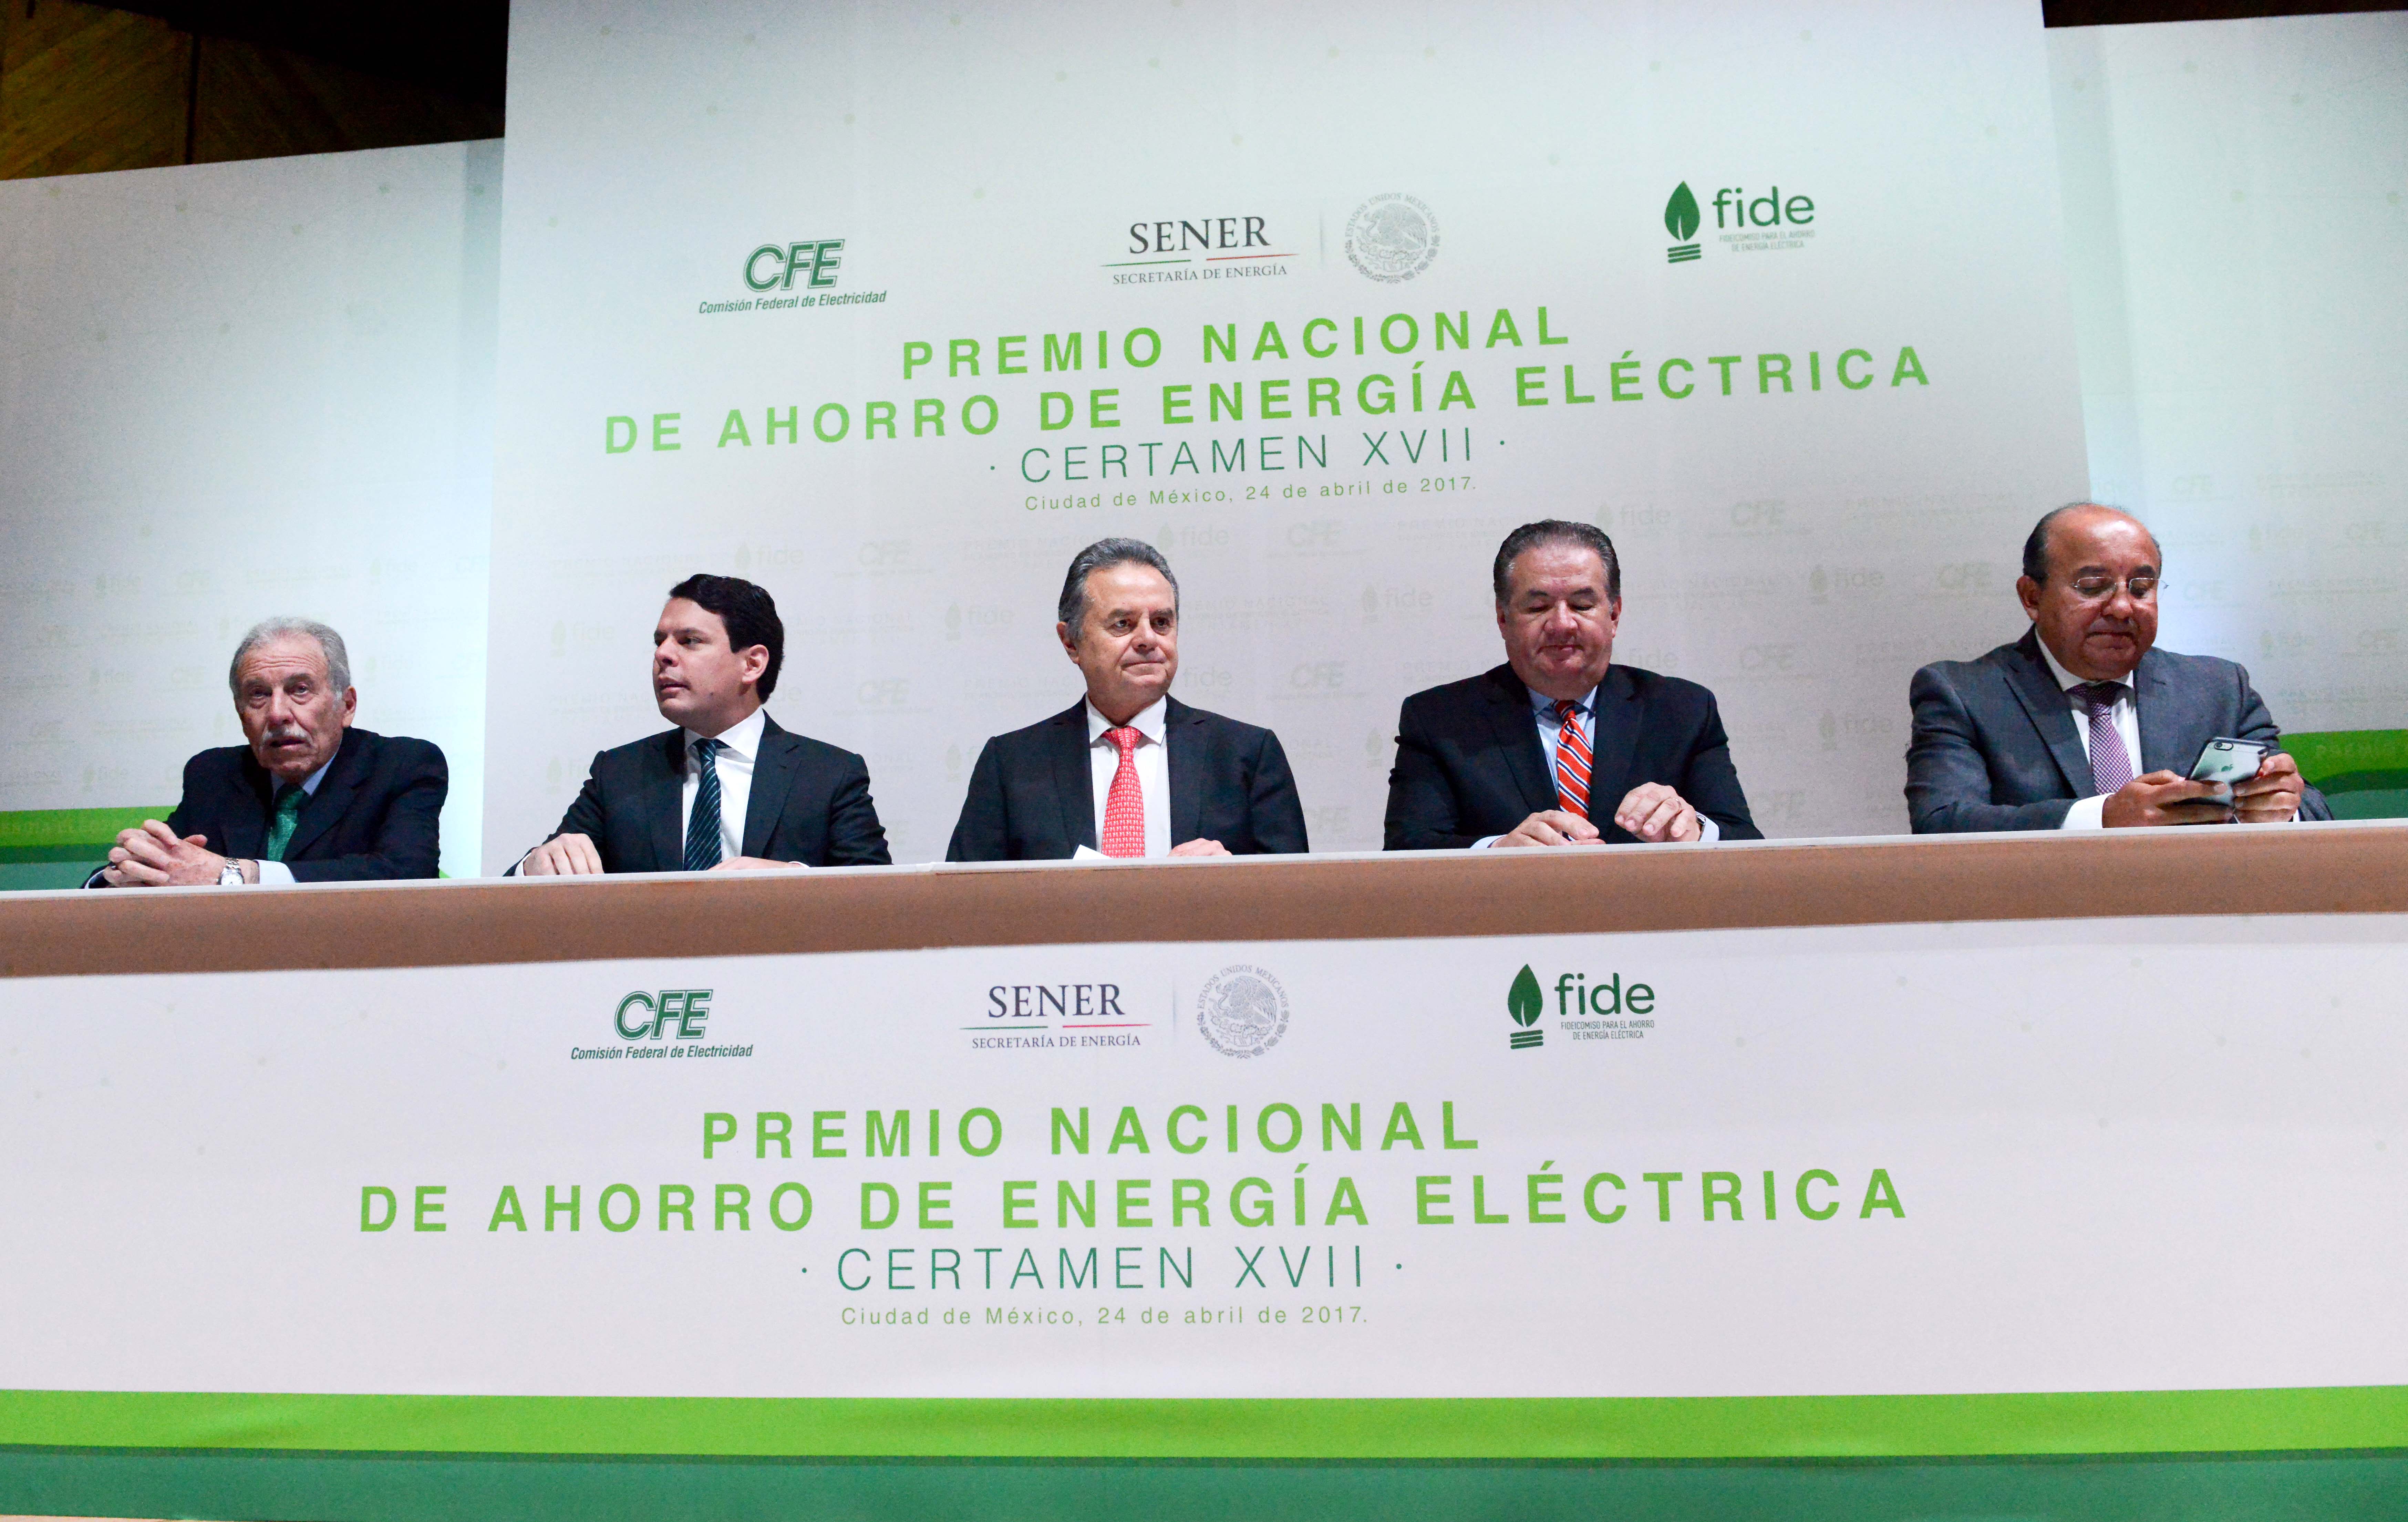 La Secretaría de Energía, la Comisión Federal de Electricidad (CFE) y el Fideicomiso para el Ahorro de Energía (FIDE) reconocieron hoy los logros en materia de ahorro de energía eléctrica de 21 empresas e instituciones mexicanas.